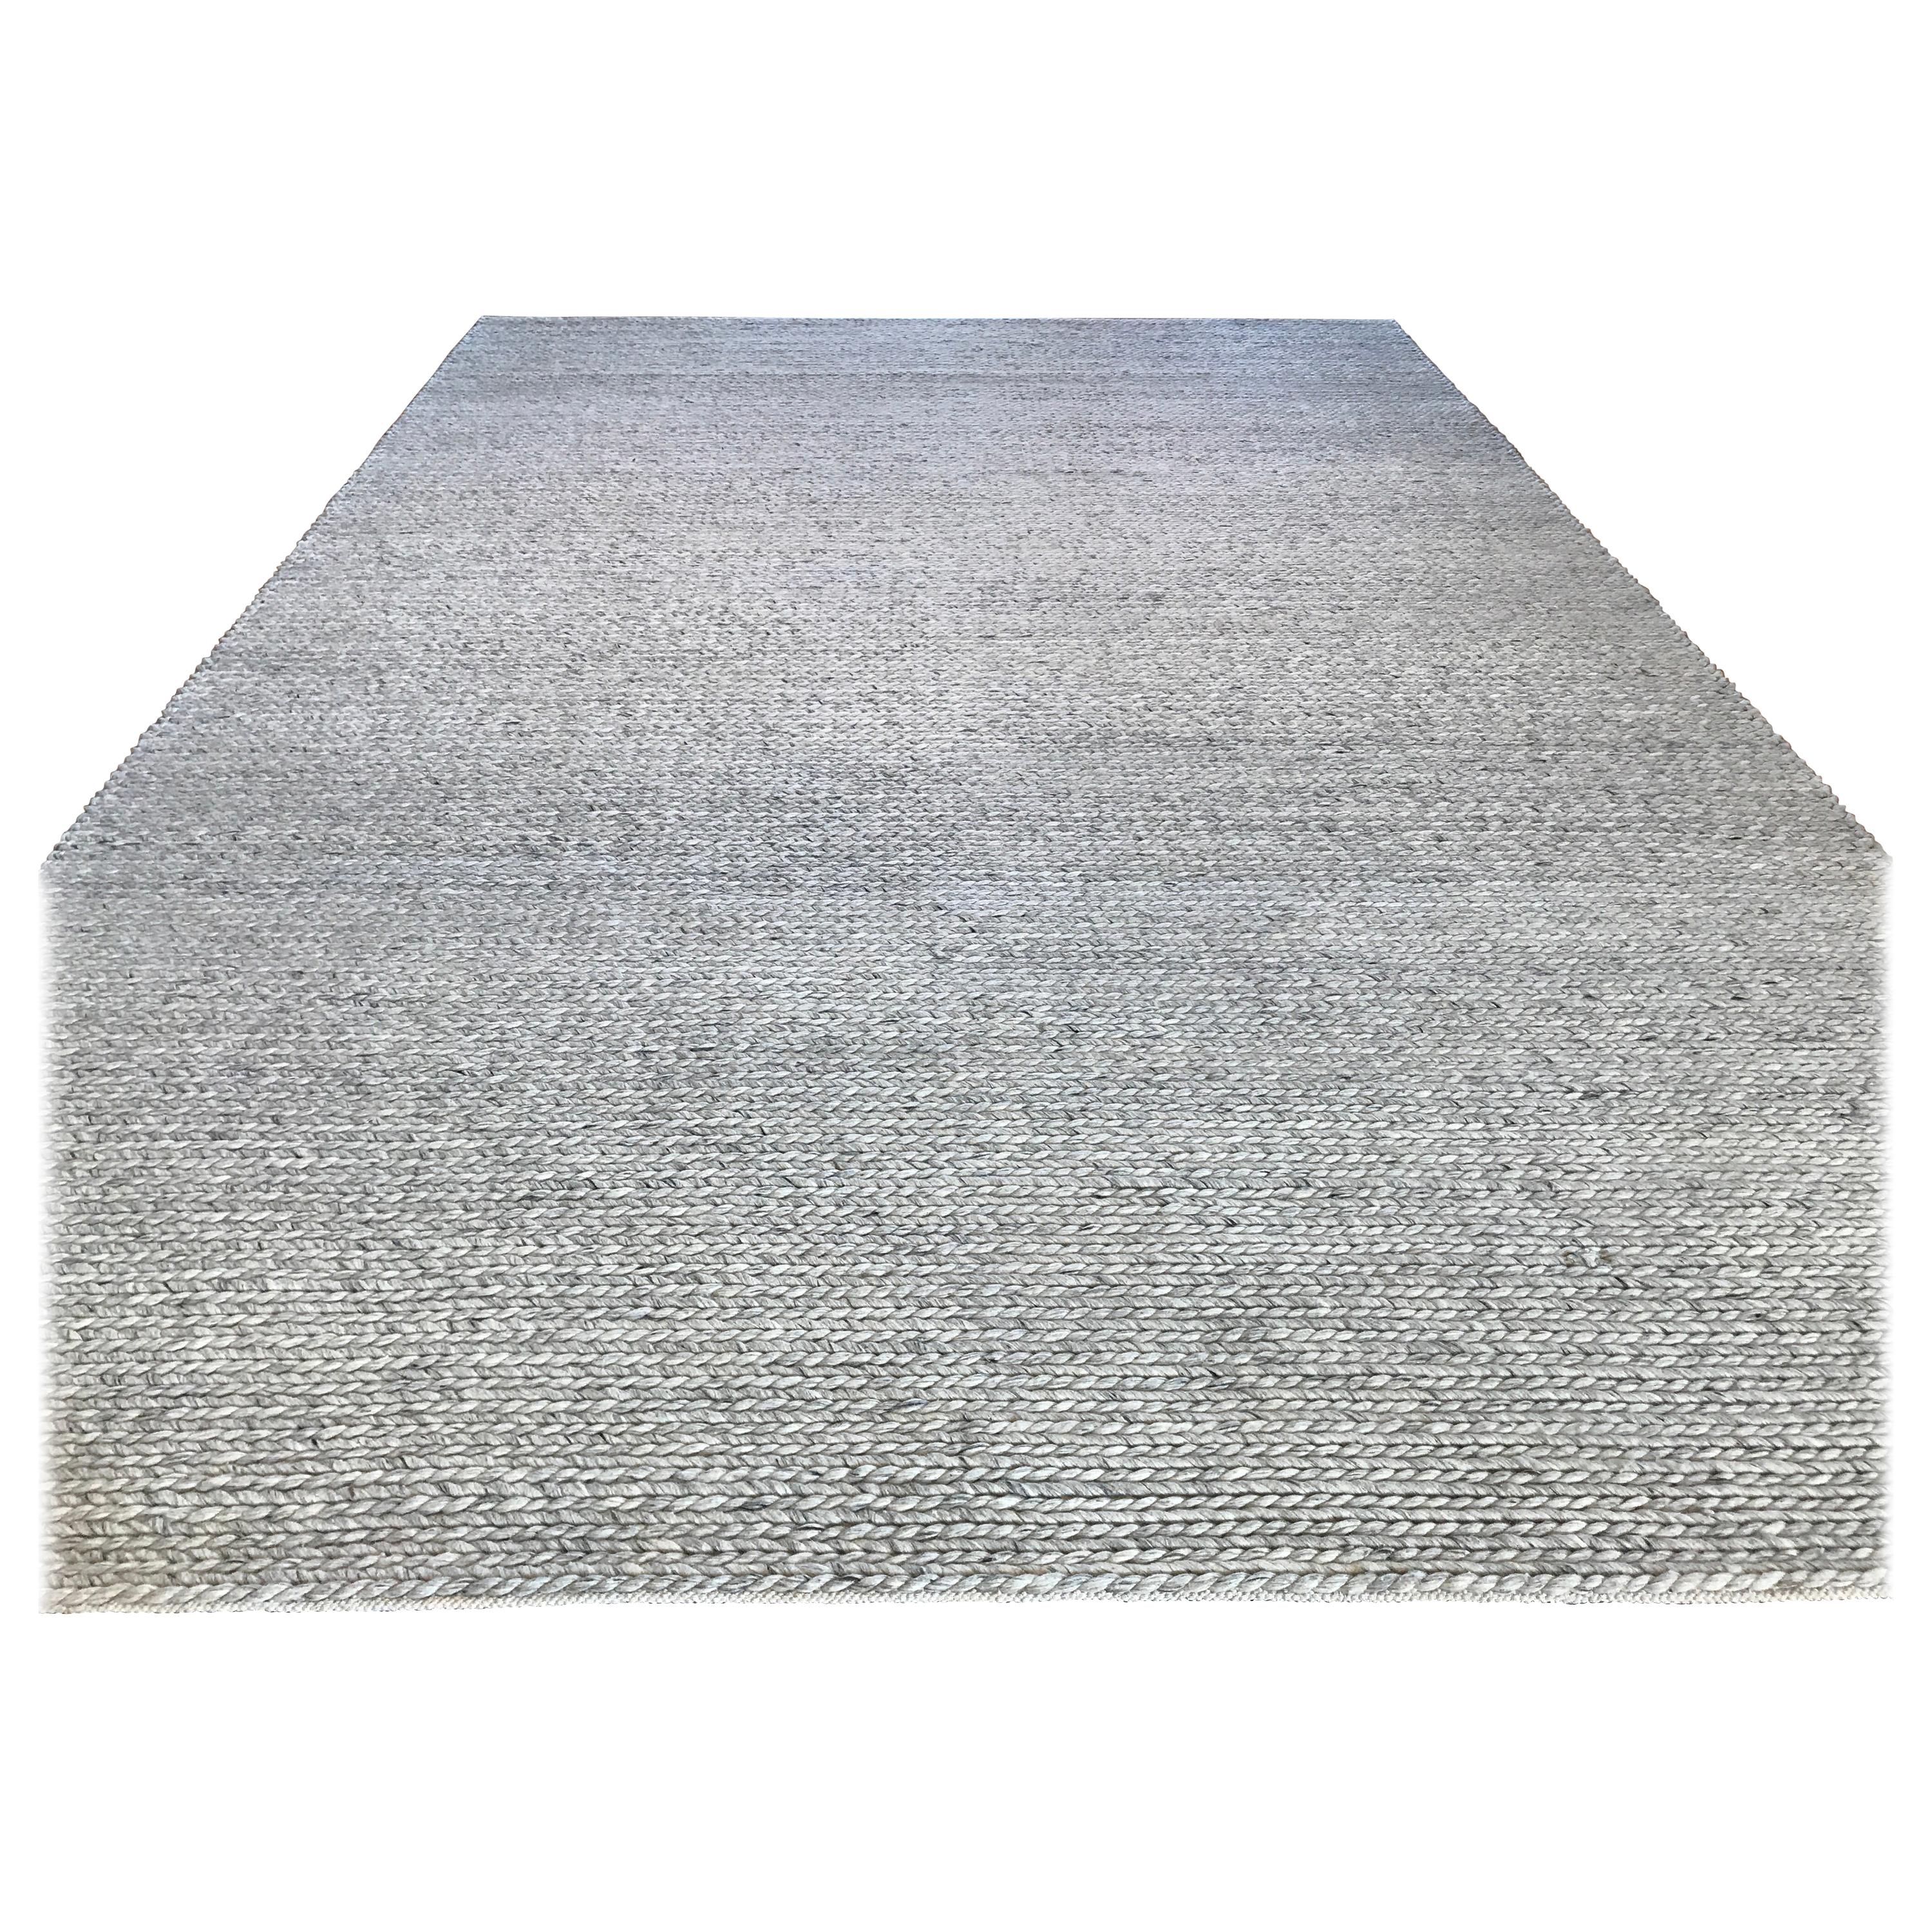 oatmeal carpet